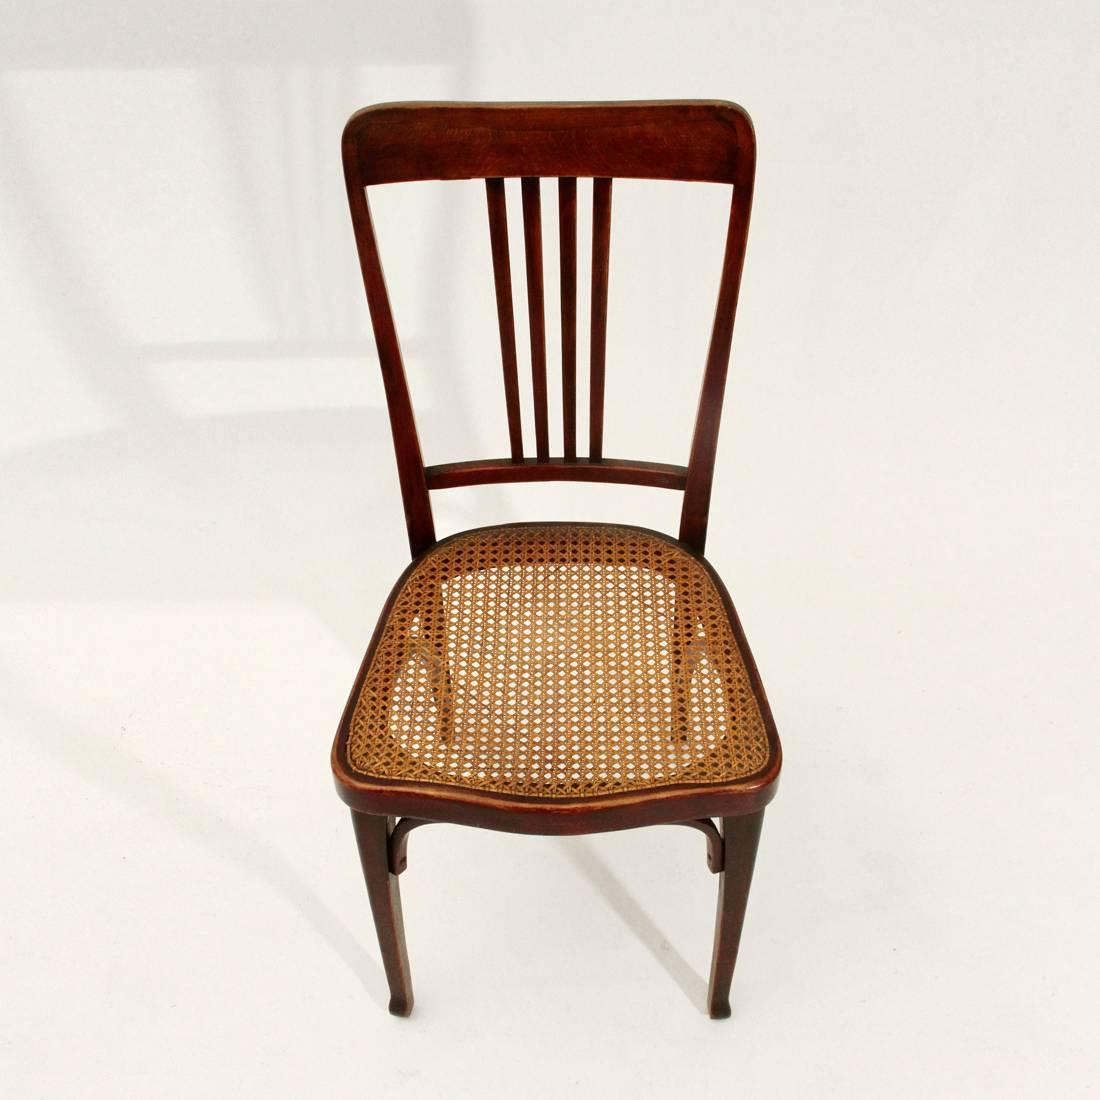 Six Art Nouveau Mod. 675 Chair by Thonet 1